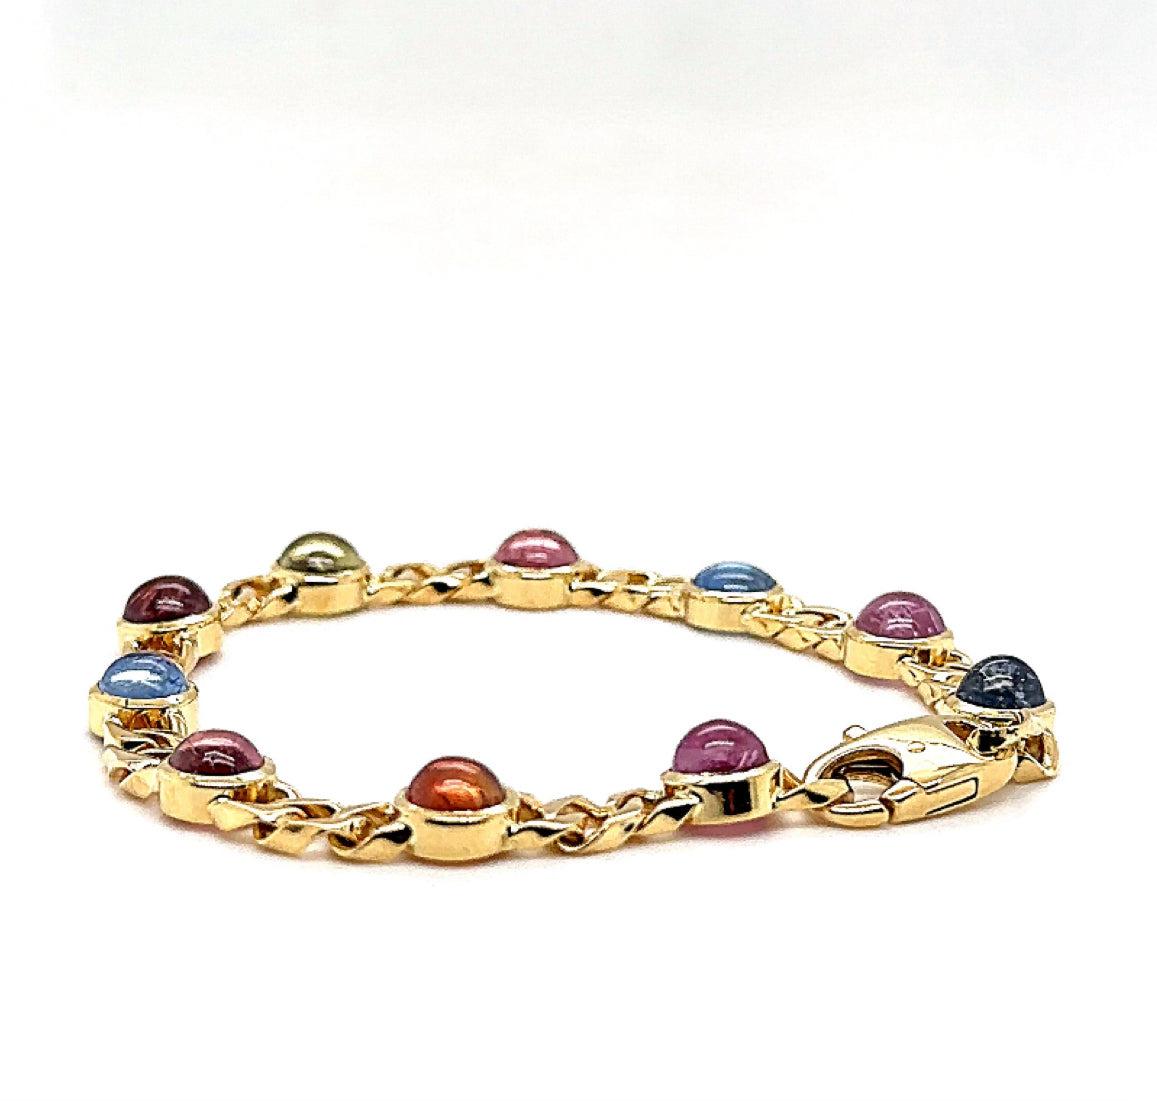 Unser exquisites Armband vereint den atemberaubenden Glanz von 18 Karat (750/-.) Gelbgold mit der faszinierenden Schönheit von buntfarbigen Saphiren. Jeder der Saphire wird in einer eleganten Zargenfassung gehalten, wodurch ihre leuchtenden Farben